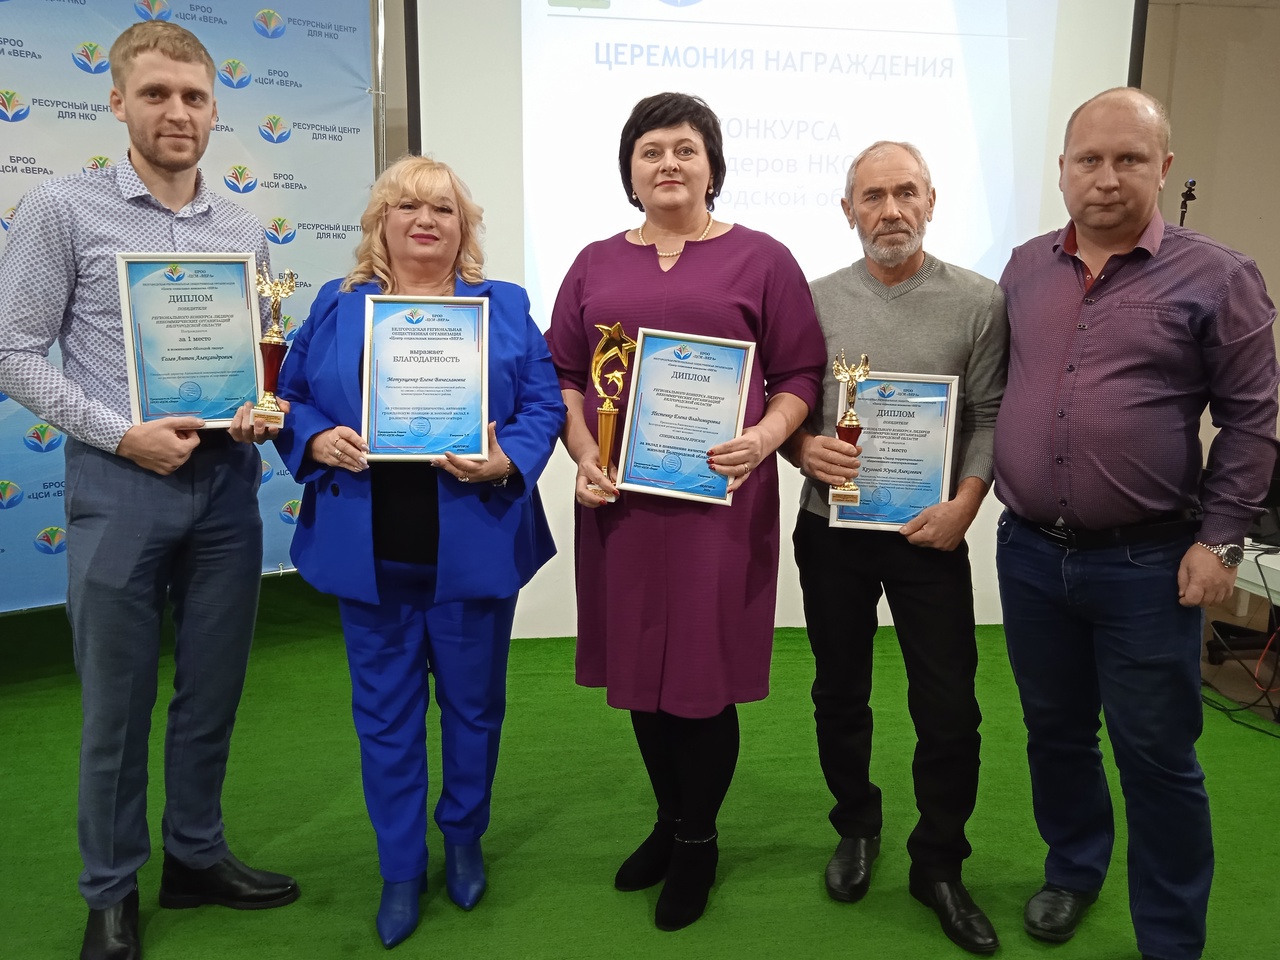 Ракитянцы - победители четвертого регионального конкурса «Лидеры НКО Белгородской области»